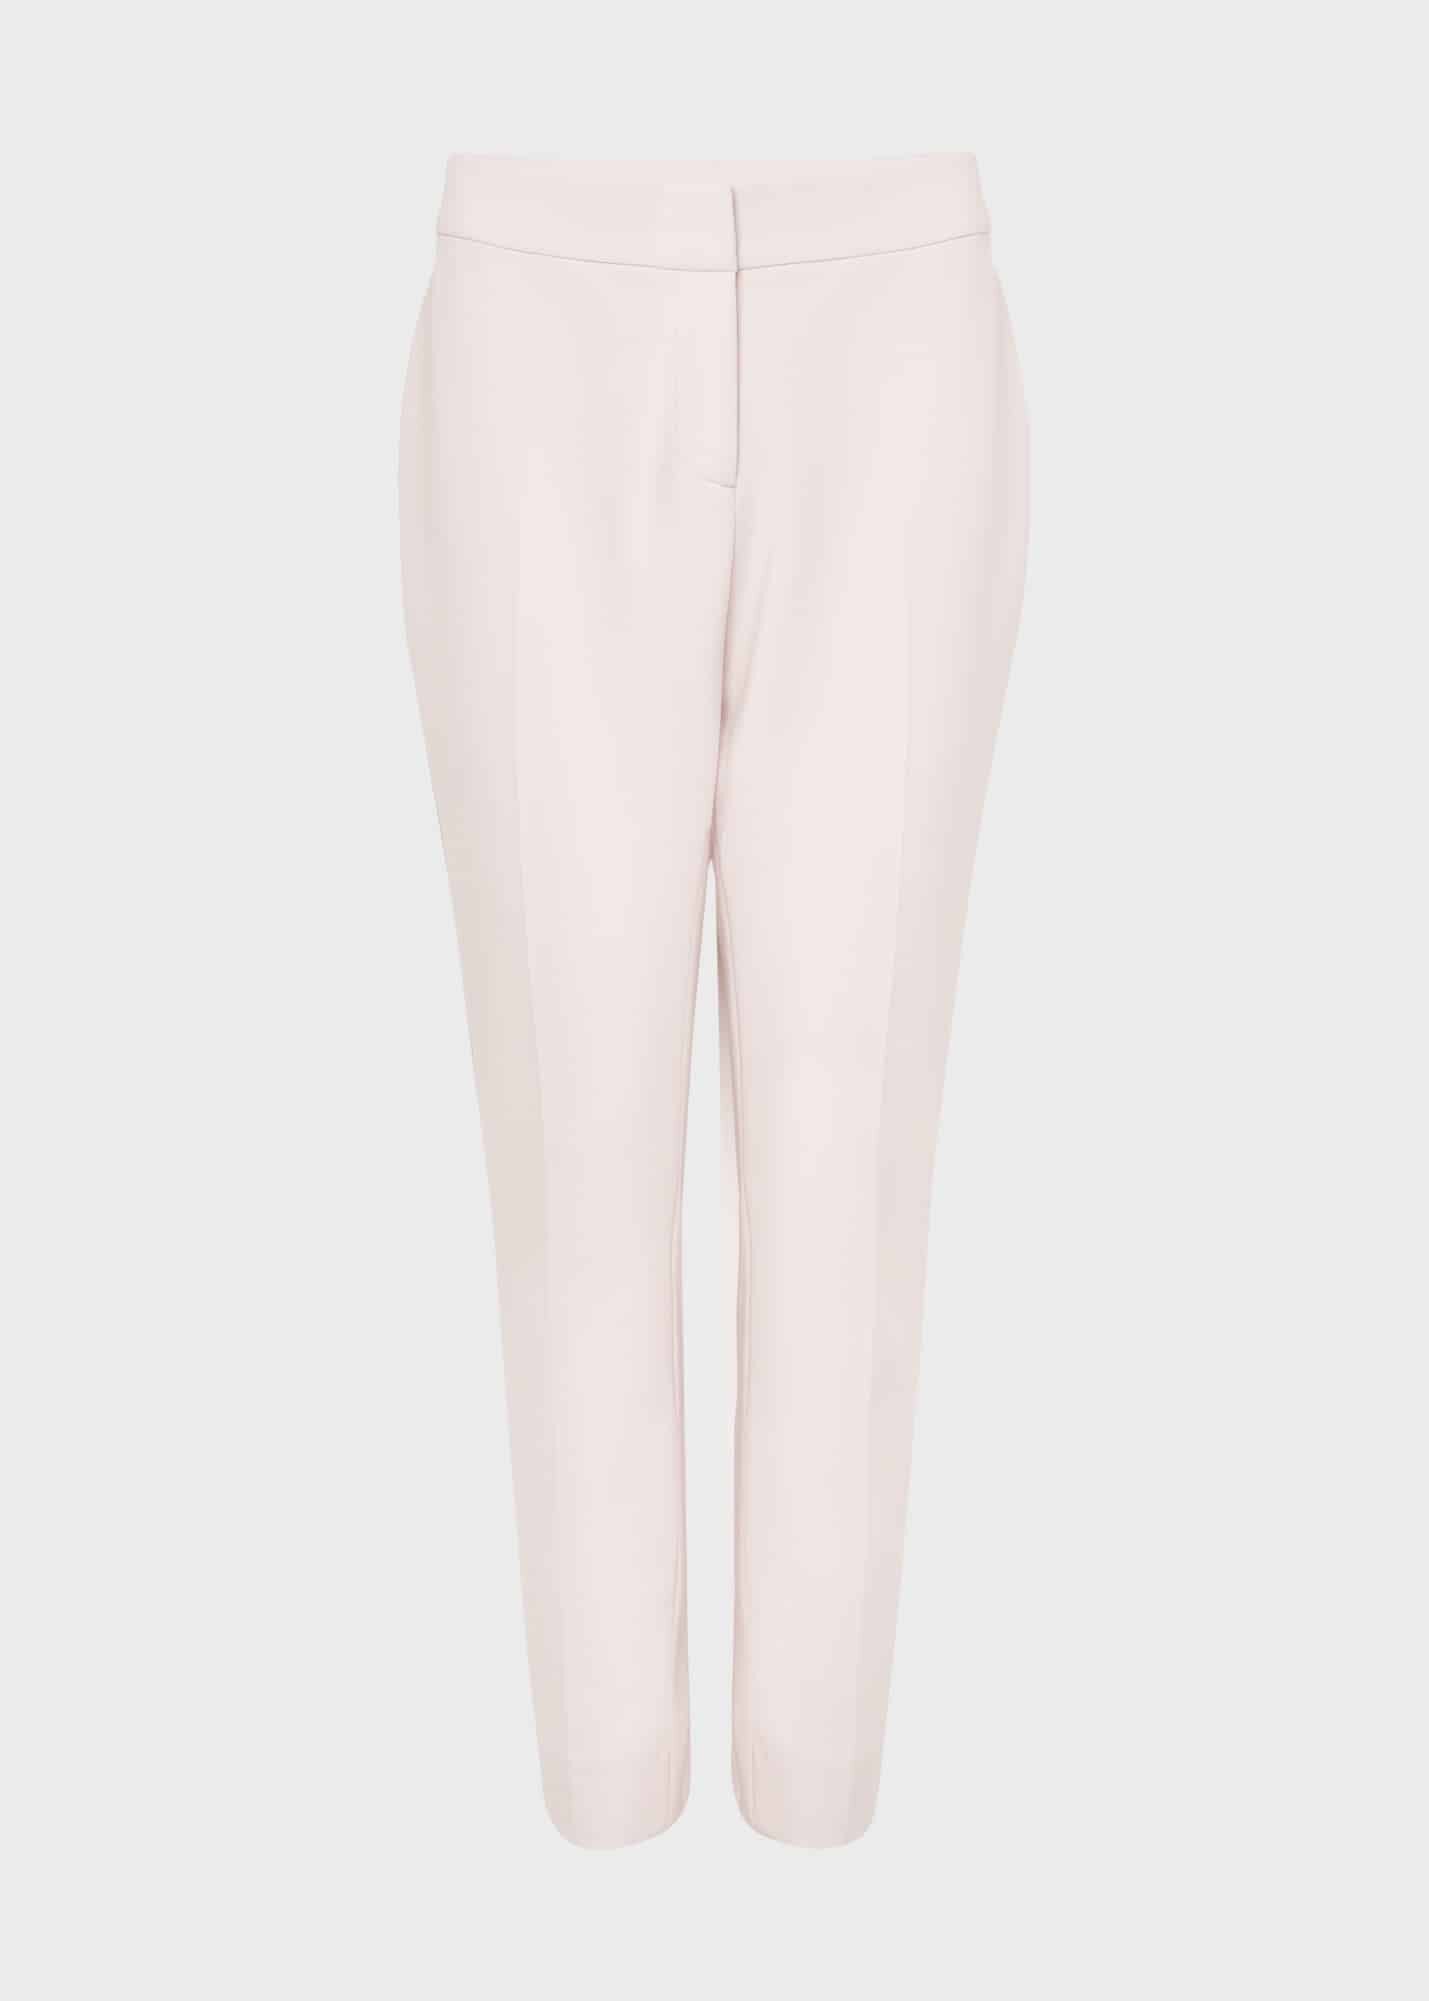 Kaia Trouser 0123/8943/9845l00 Pale-Pink